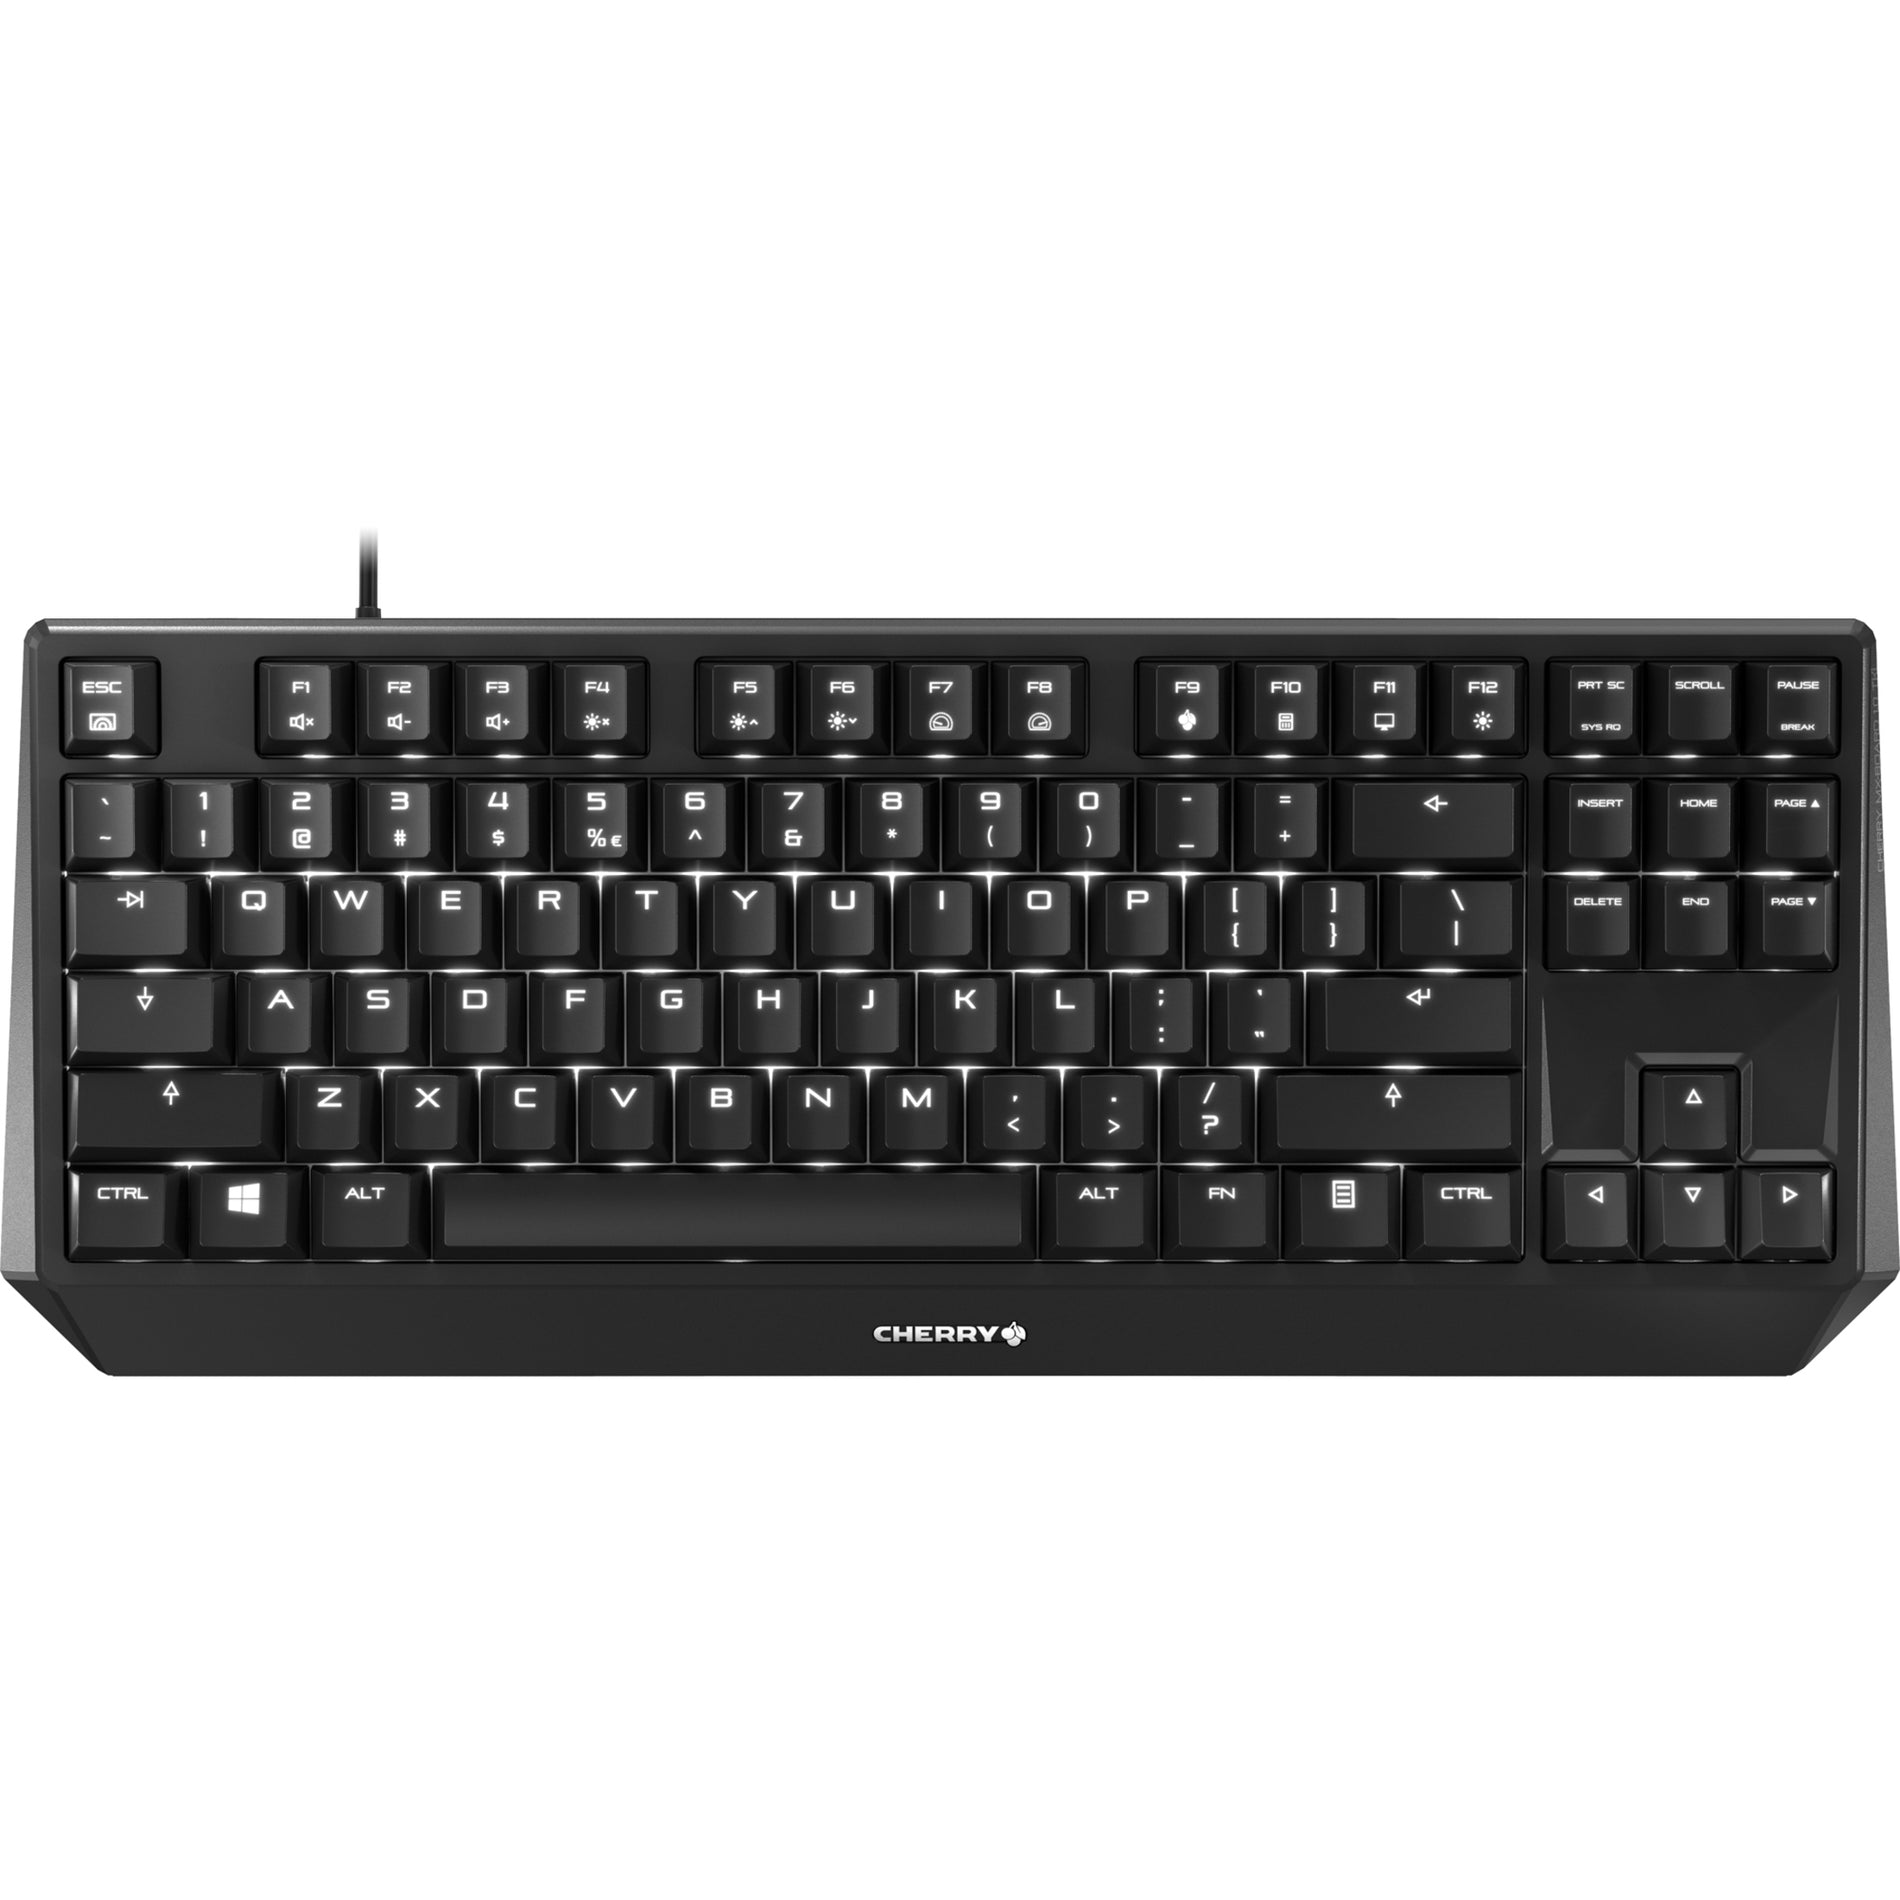 CHERRY G80-3811LYAEU-2 MX BOARD 1.0 Keybaord TKL Wired Mechanical Keyboard RGB LED Backlight 87 Keys